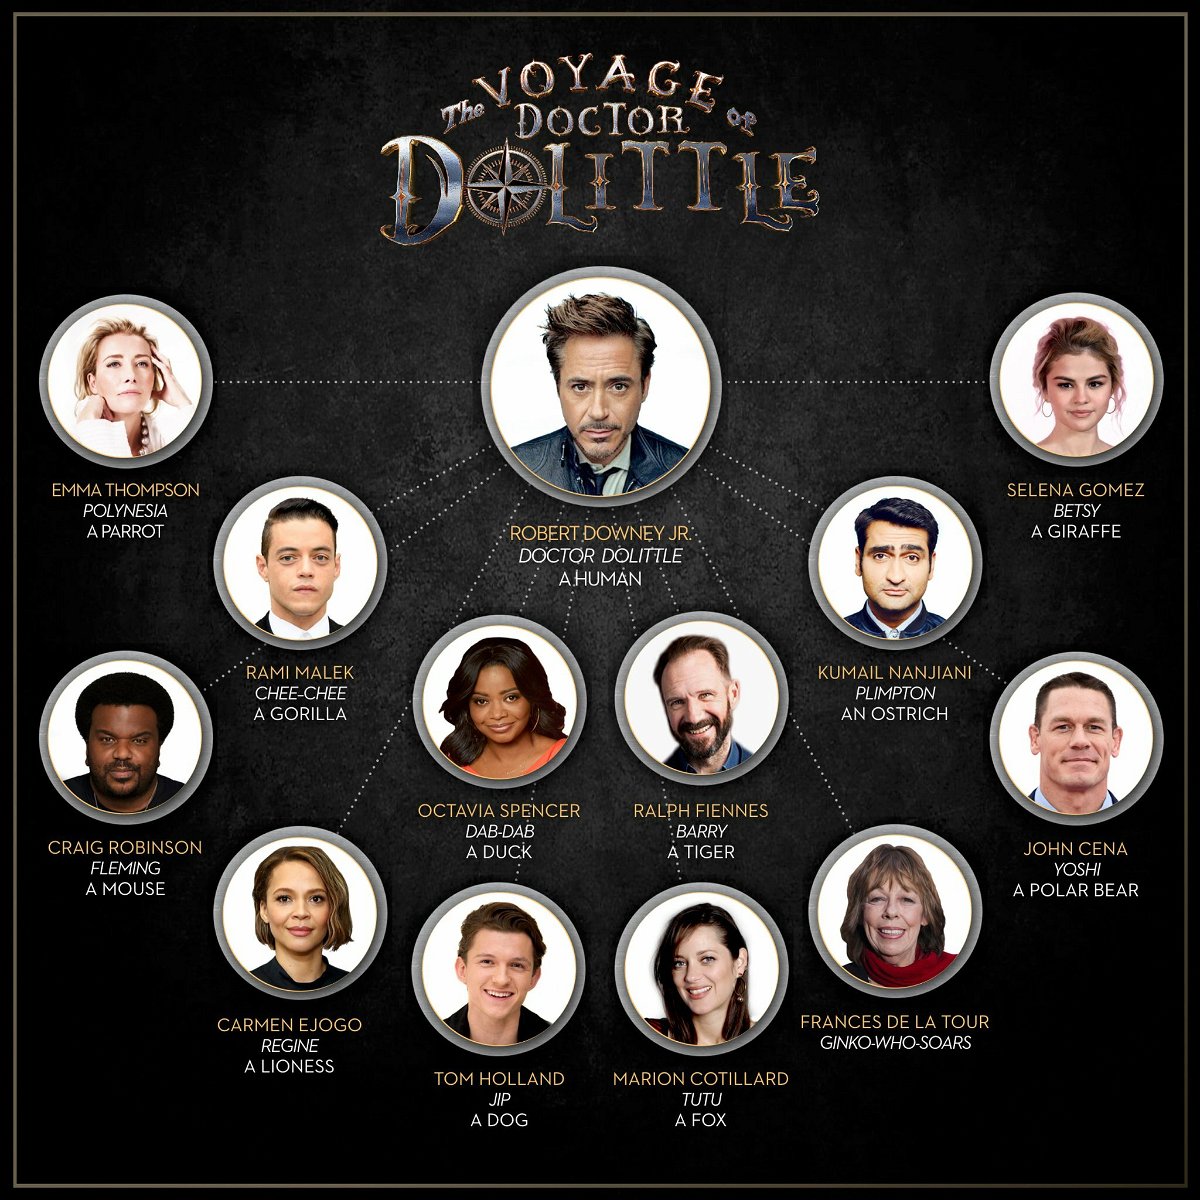 Immagine con il cast di The Voyage of Doctor Dolittle